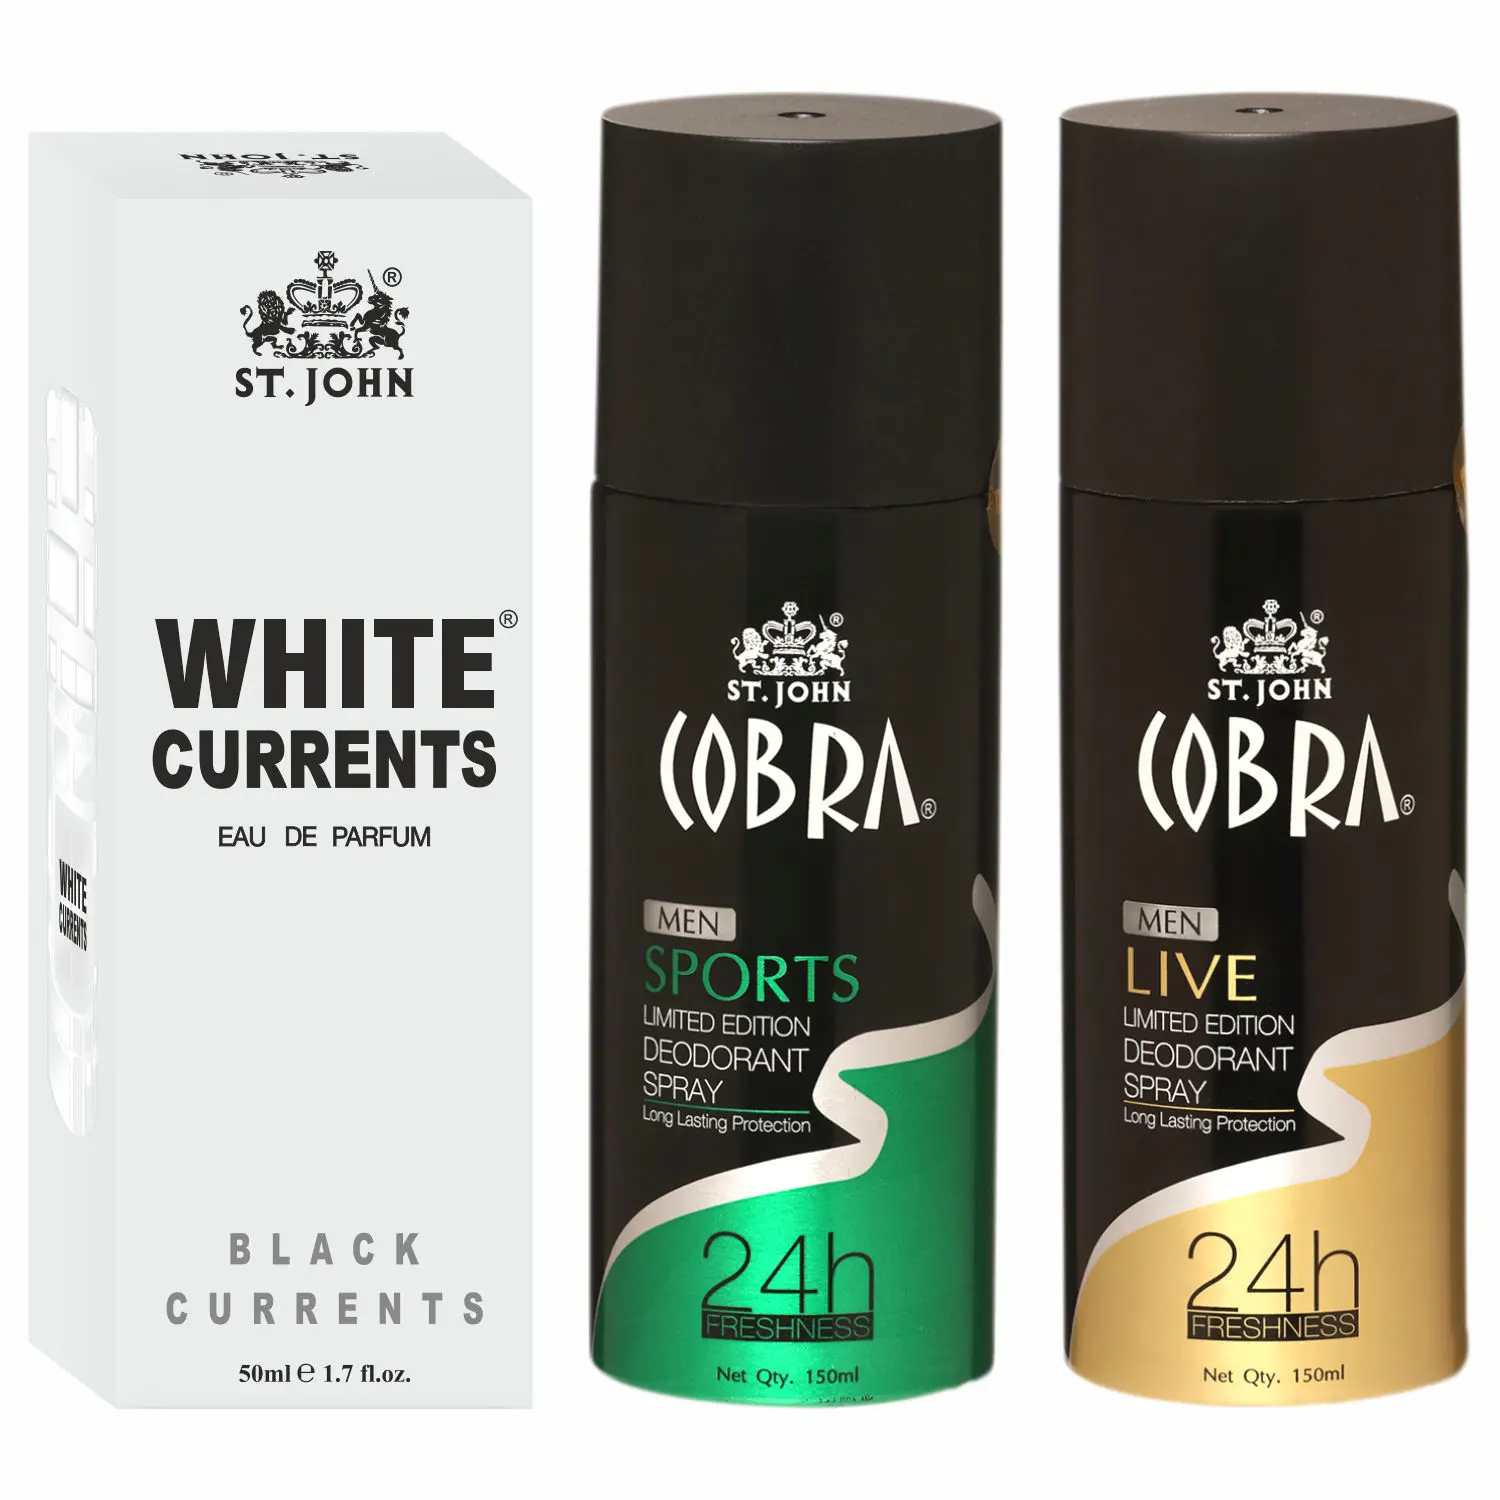 ST-JOHN Cobra Deodrant Live & Sports 150 ml each & White Current 50ml Perfume Combo Pack Perfume Body Spray - For Men & Women (350 ml, Pack of 3)